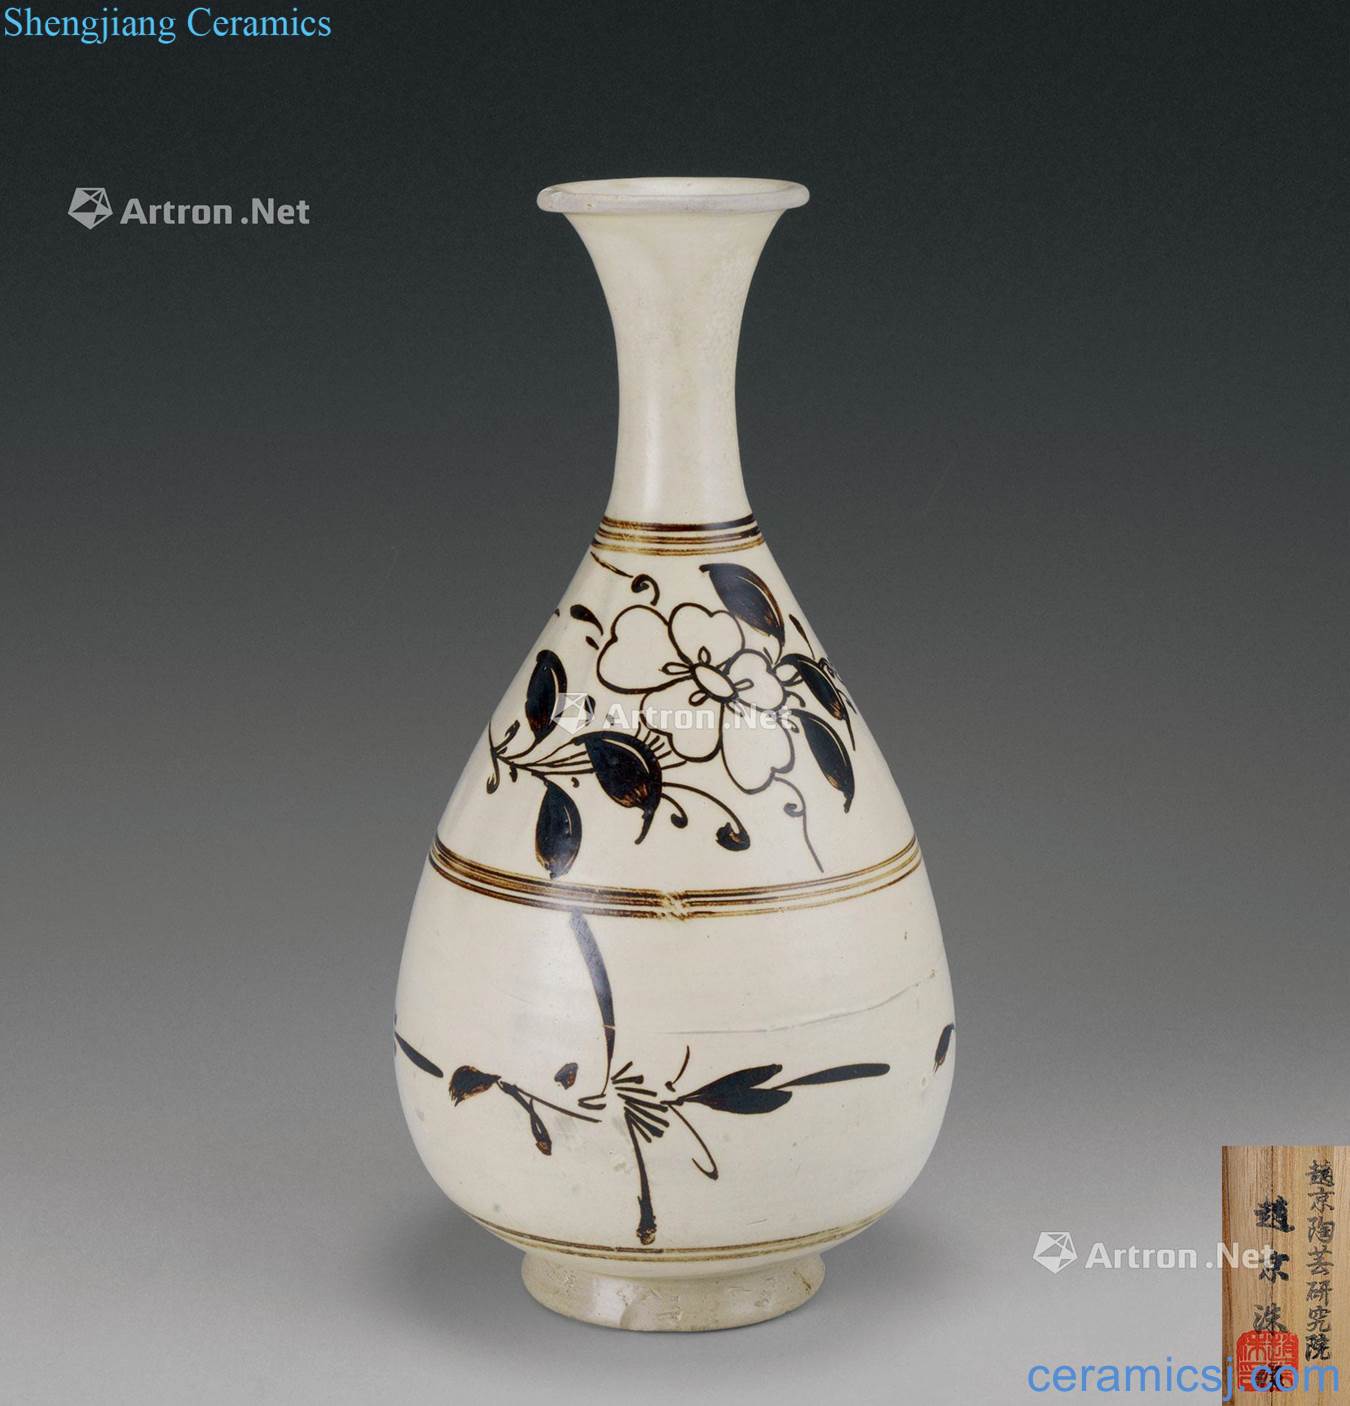 Yuan dynasty (1279-1368) magnetic state kiln flower grain okho spring bottle